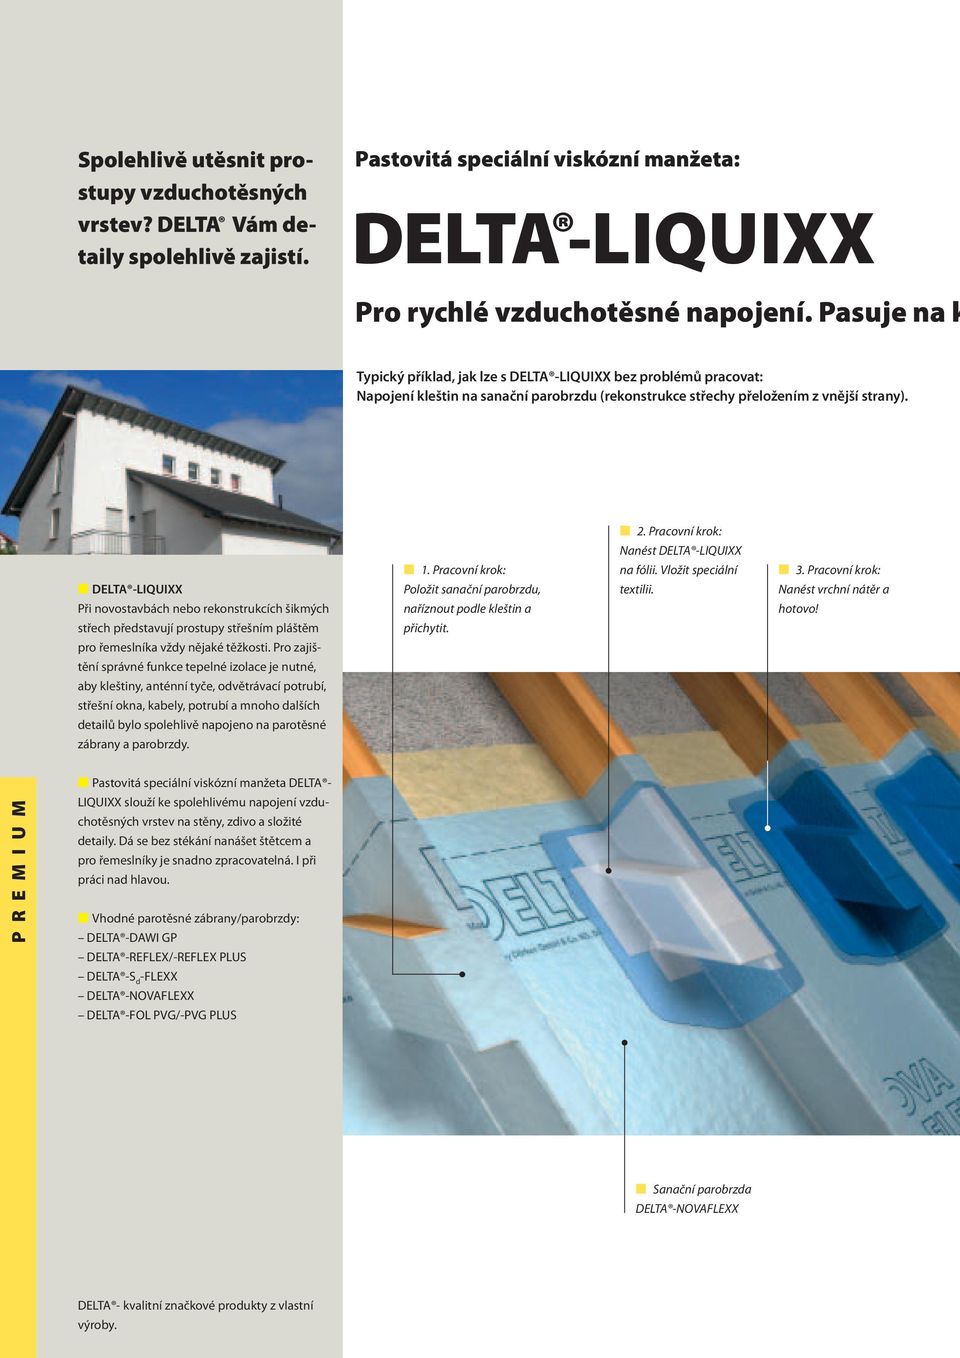 DELTA -LIQUIXX Při novostavbách nebo rekonstrukcích šikmých střech představují prostupy střešním pláštěm pro řemeslníka vždy nějaké těžkosti.